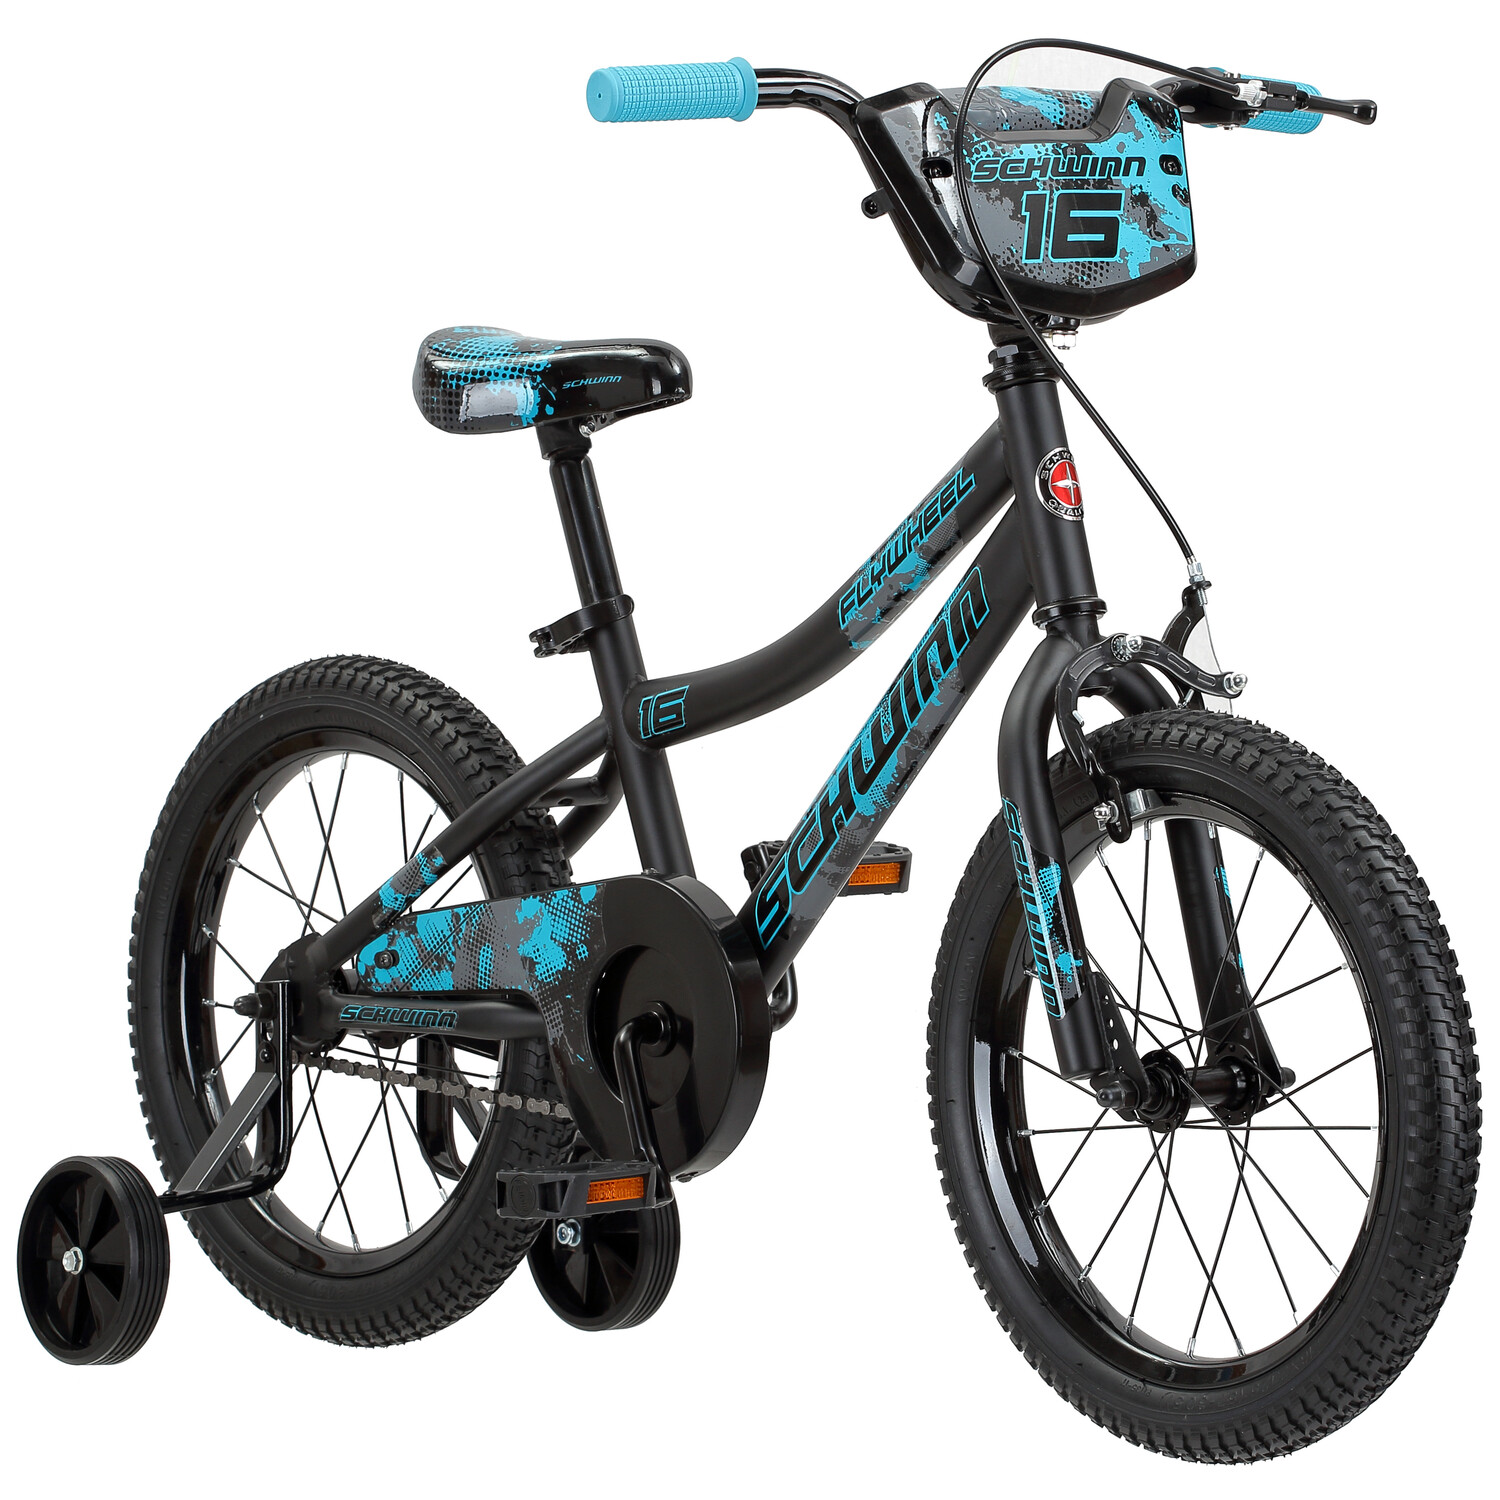 Schwinn Flywheel Smartstart Bike, 16 inch Wheels, Single Speed, Black/Blue - image 1 of 4